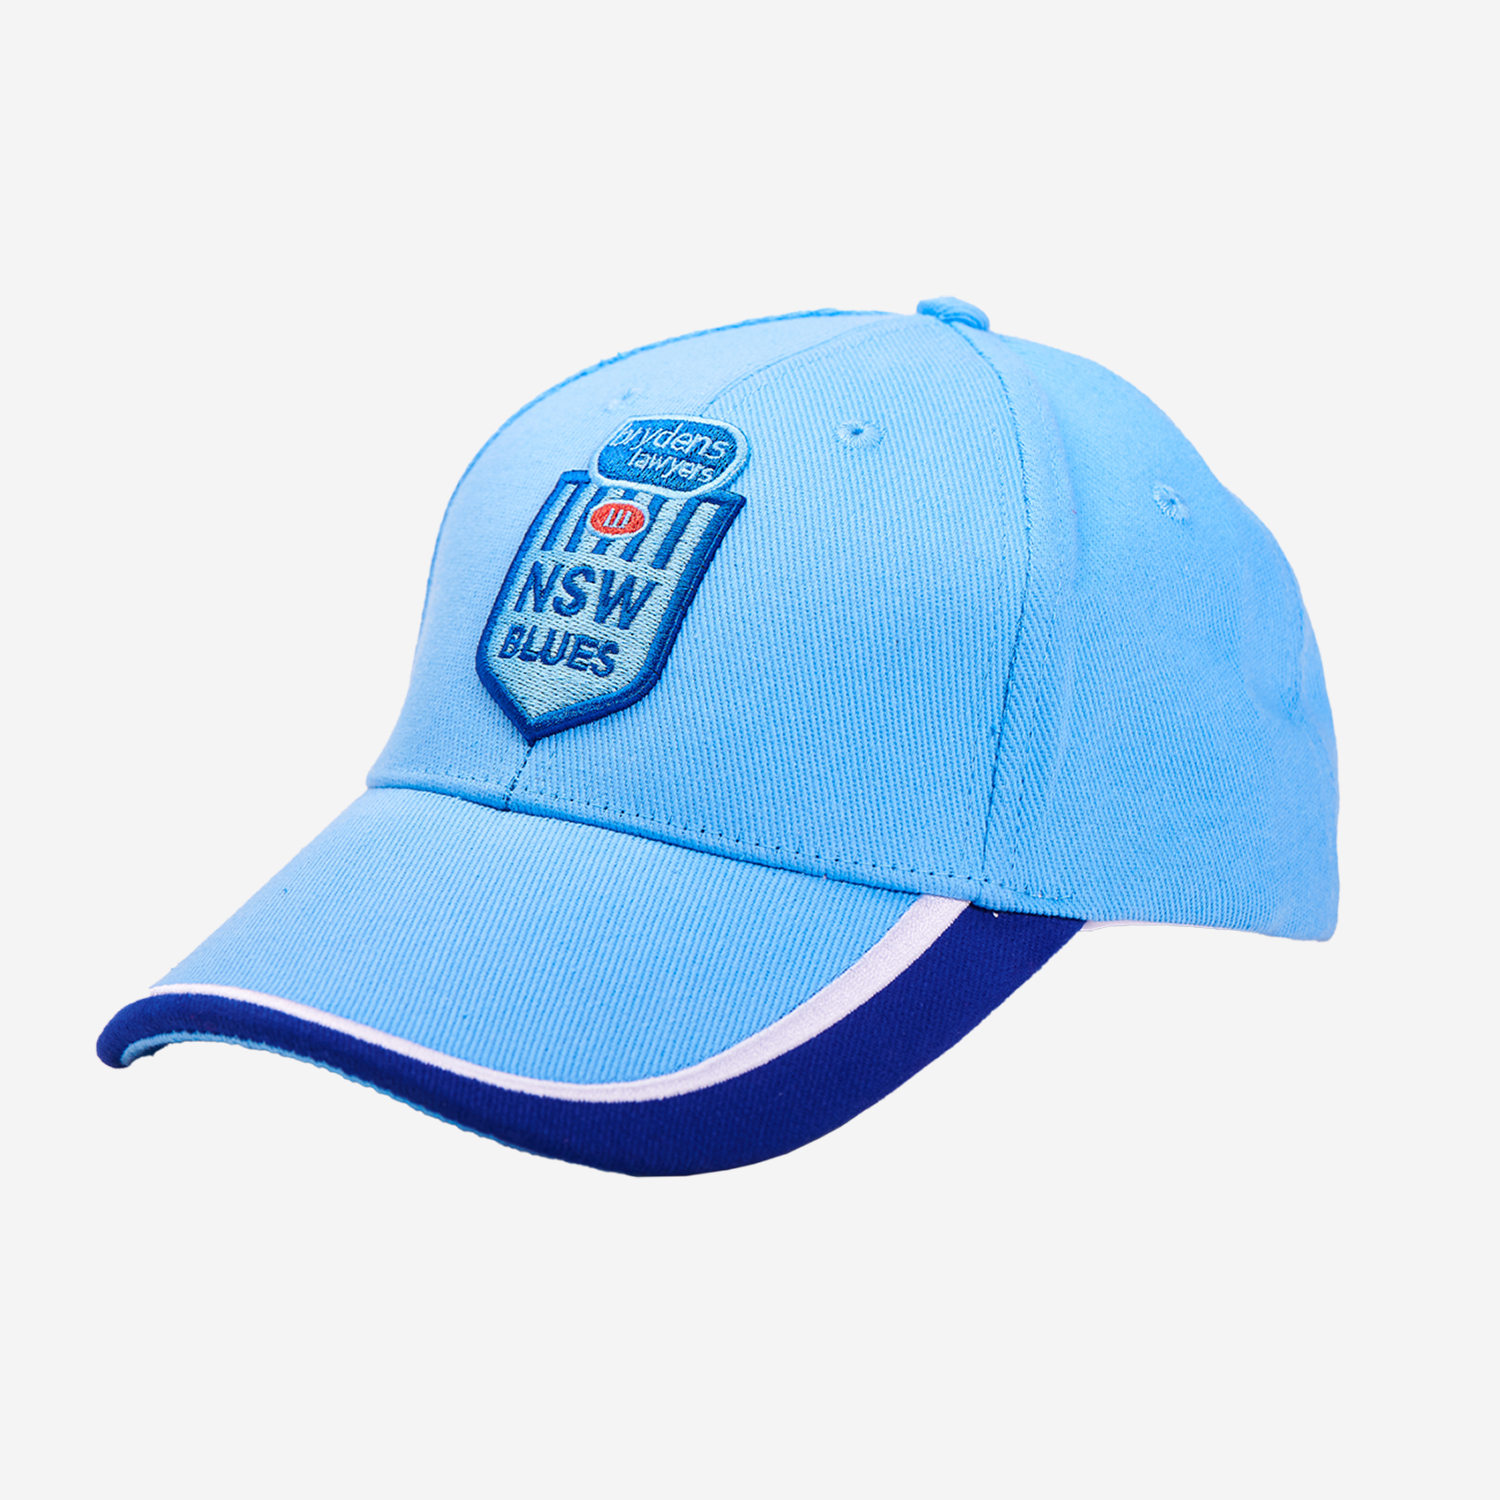 NSW Cap